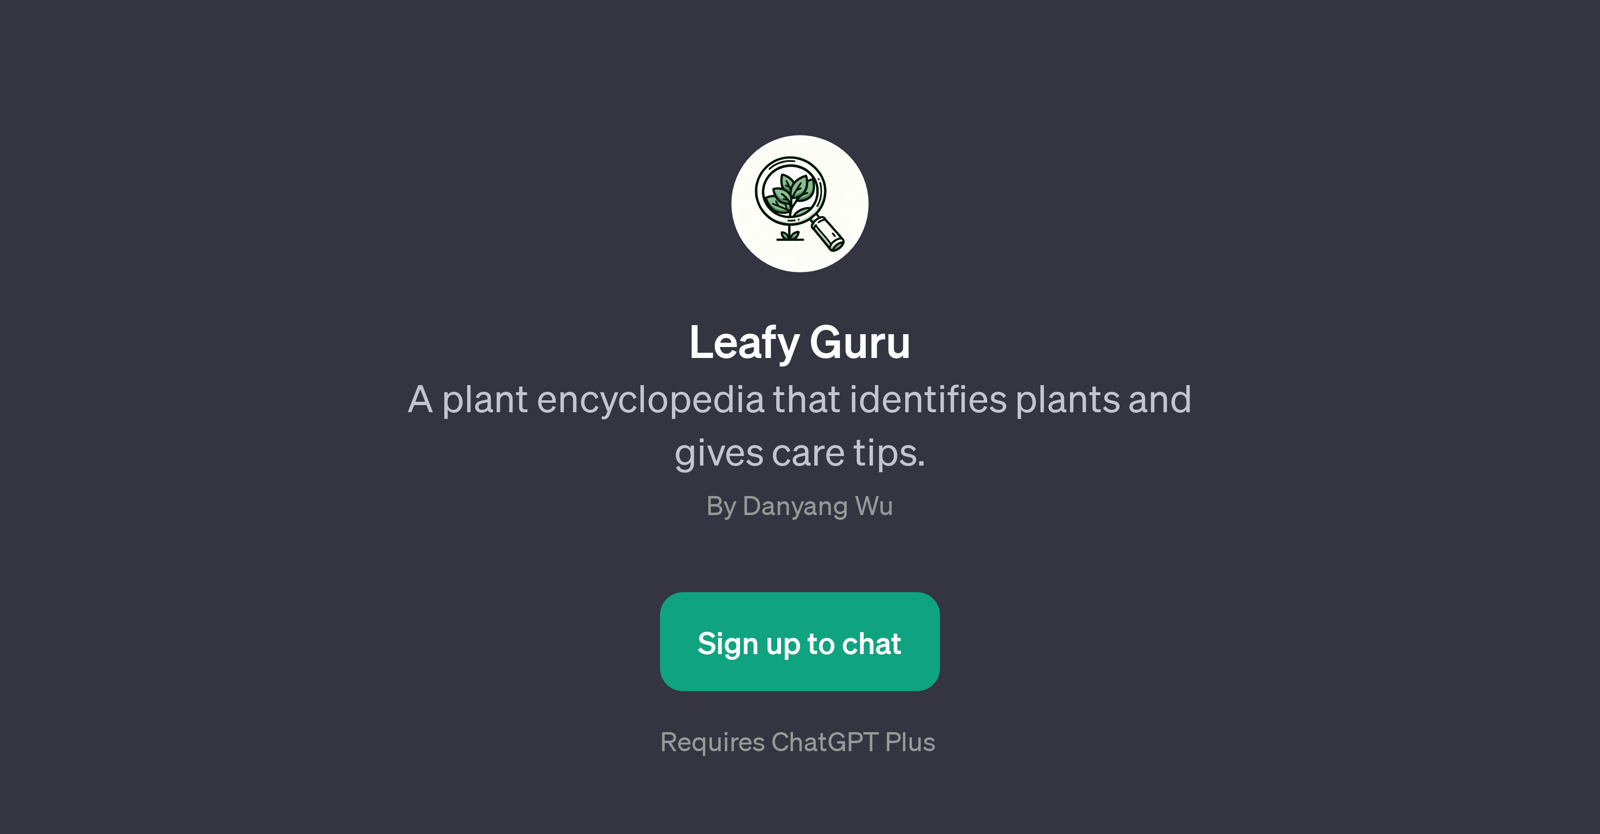 Leafy Guru website